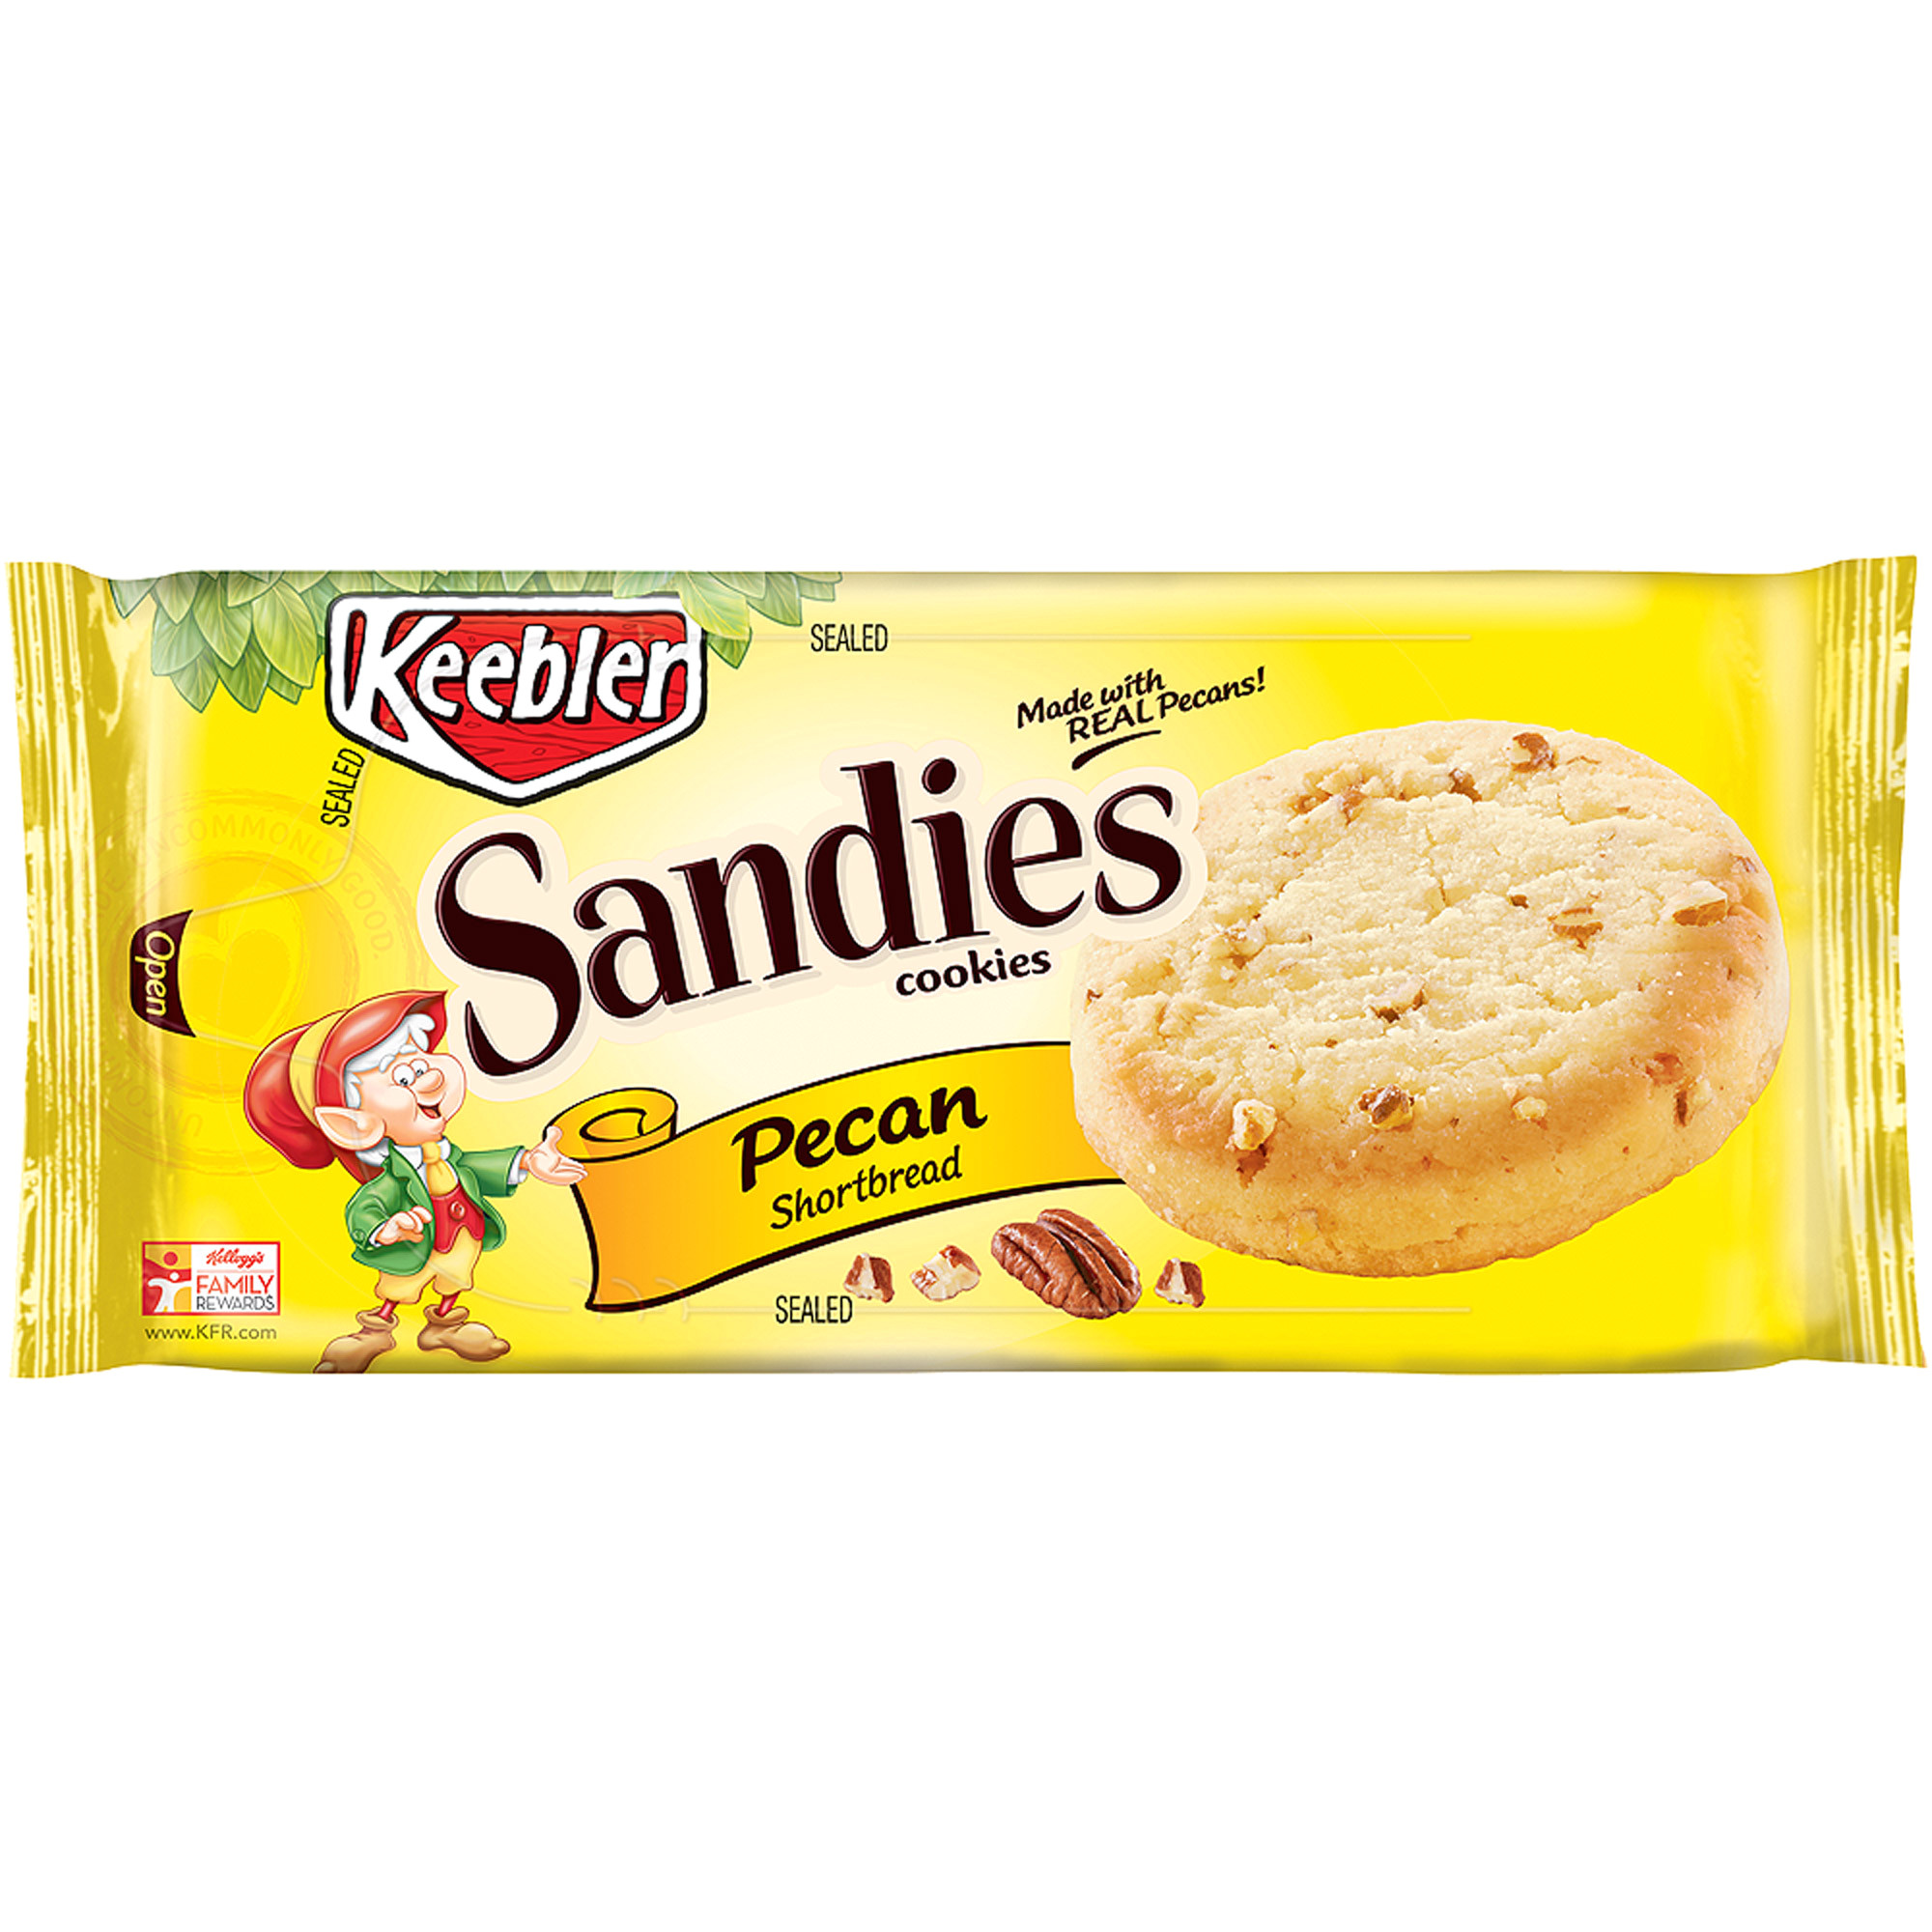 keebler sandies pecan shortbread cookies 11 3 oz pack of 12 walmart com